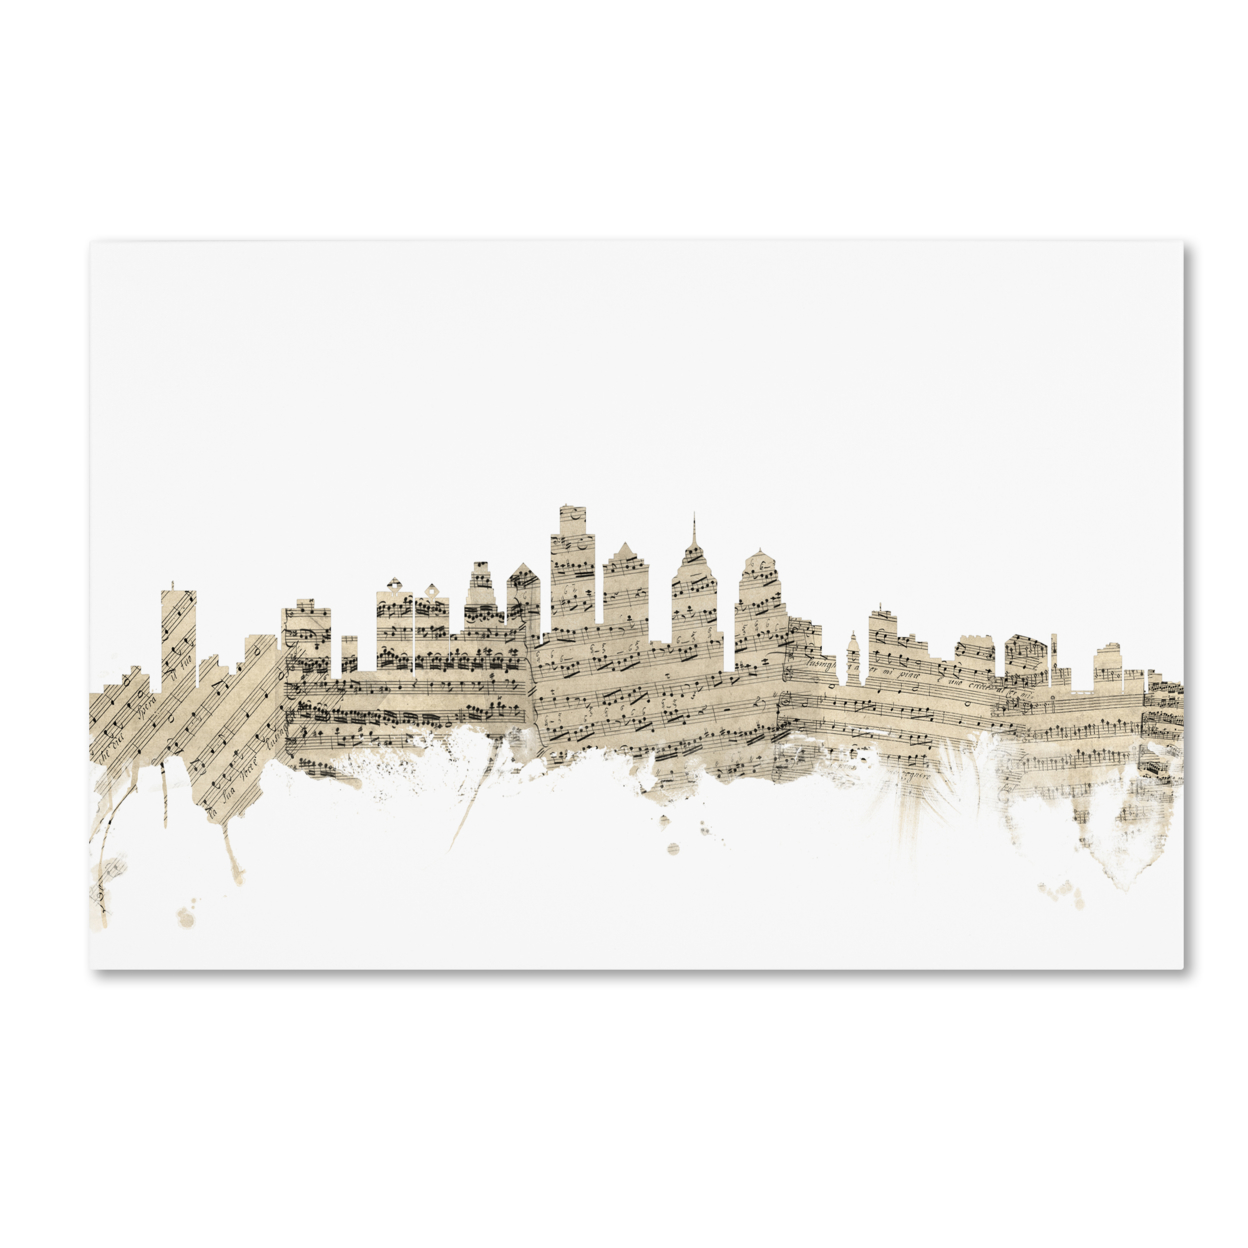 Michael Tompsett 'Philadelphia Skyline Sheet Music' Canvas Art 16 X 24